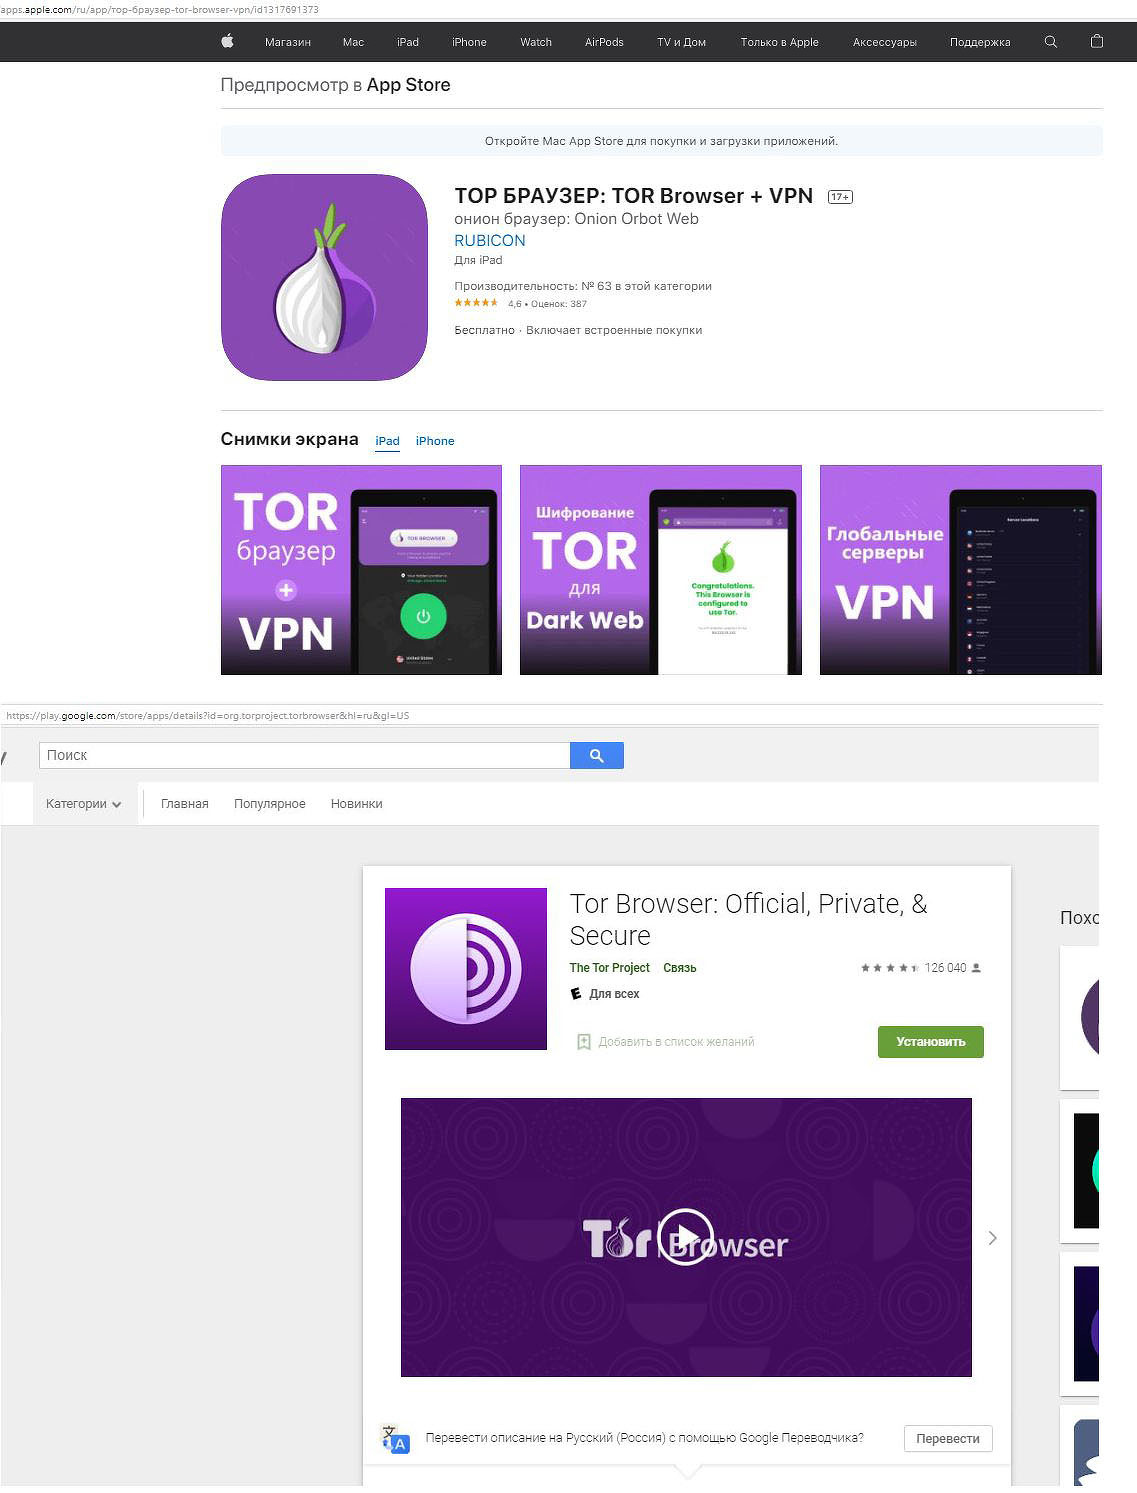 Tor browser как заблокировать проверка тор браузера hydra2web